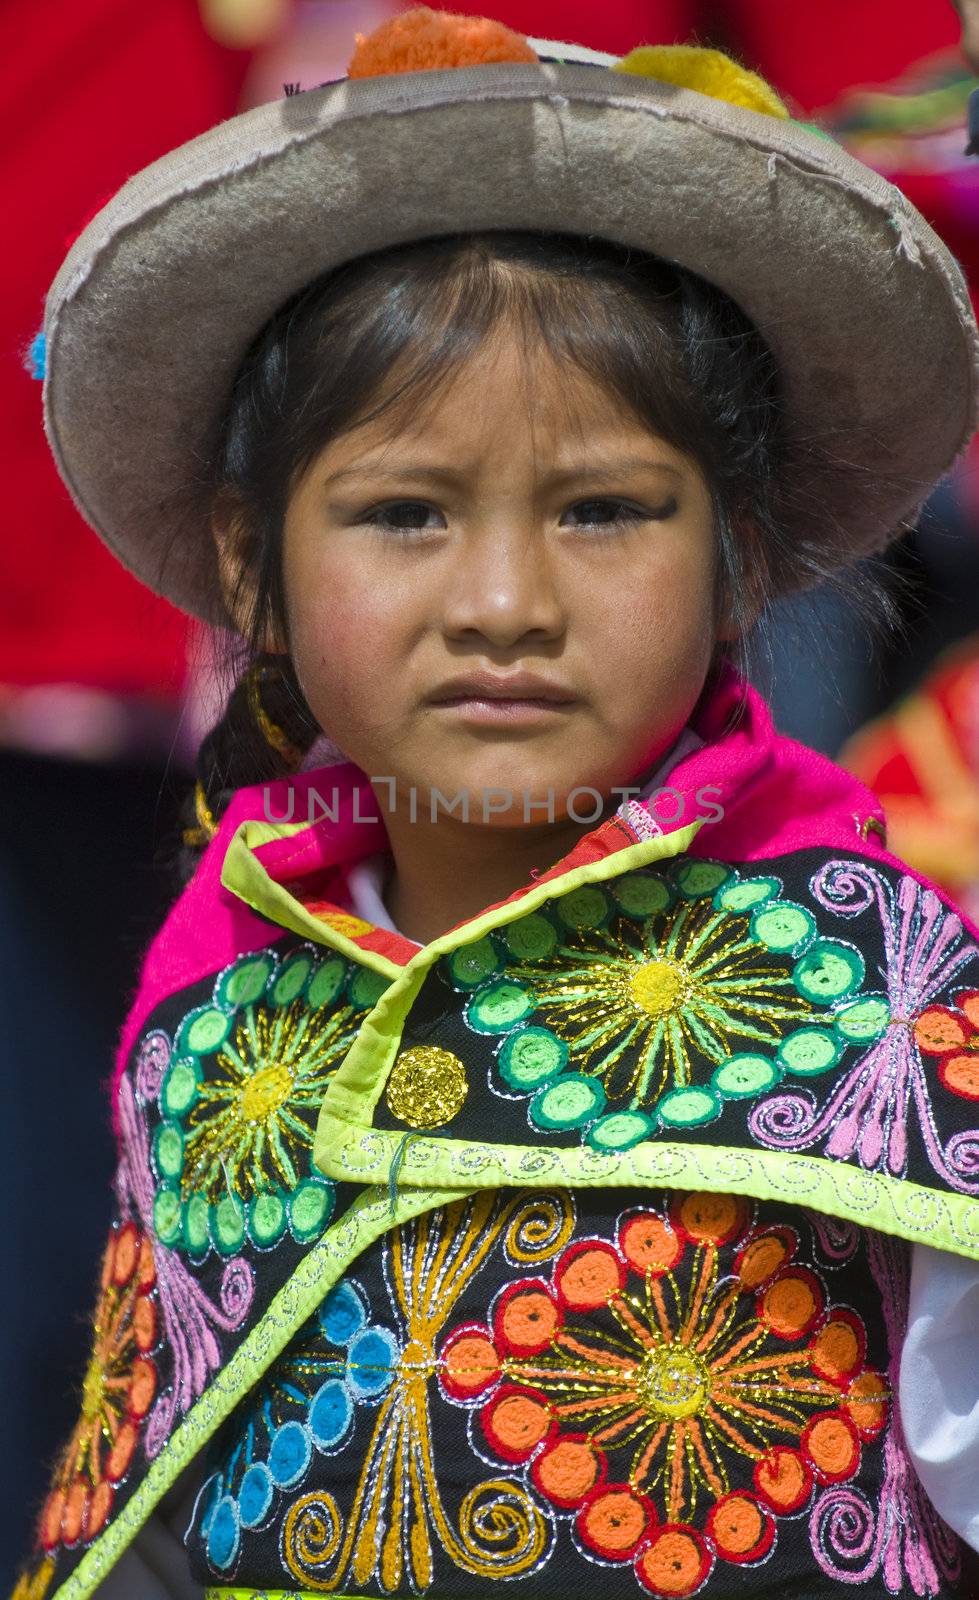 Peru education day by kobby_dagan